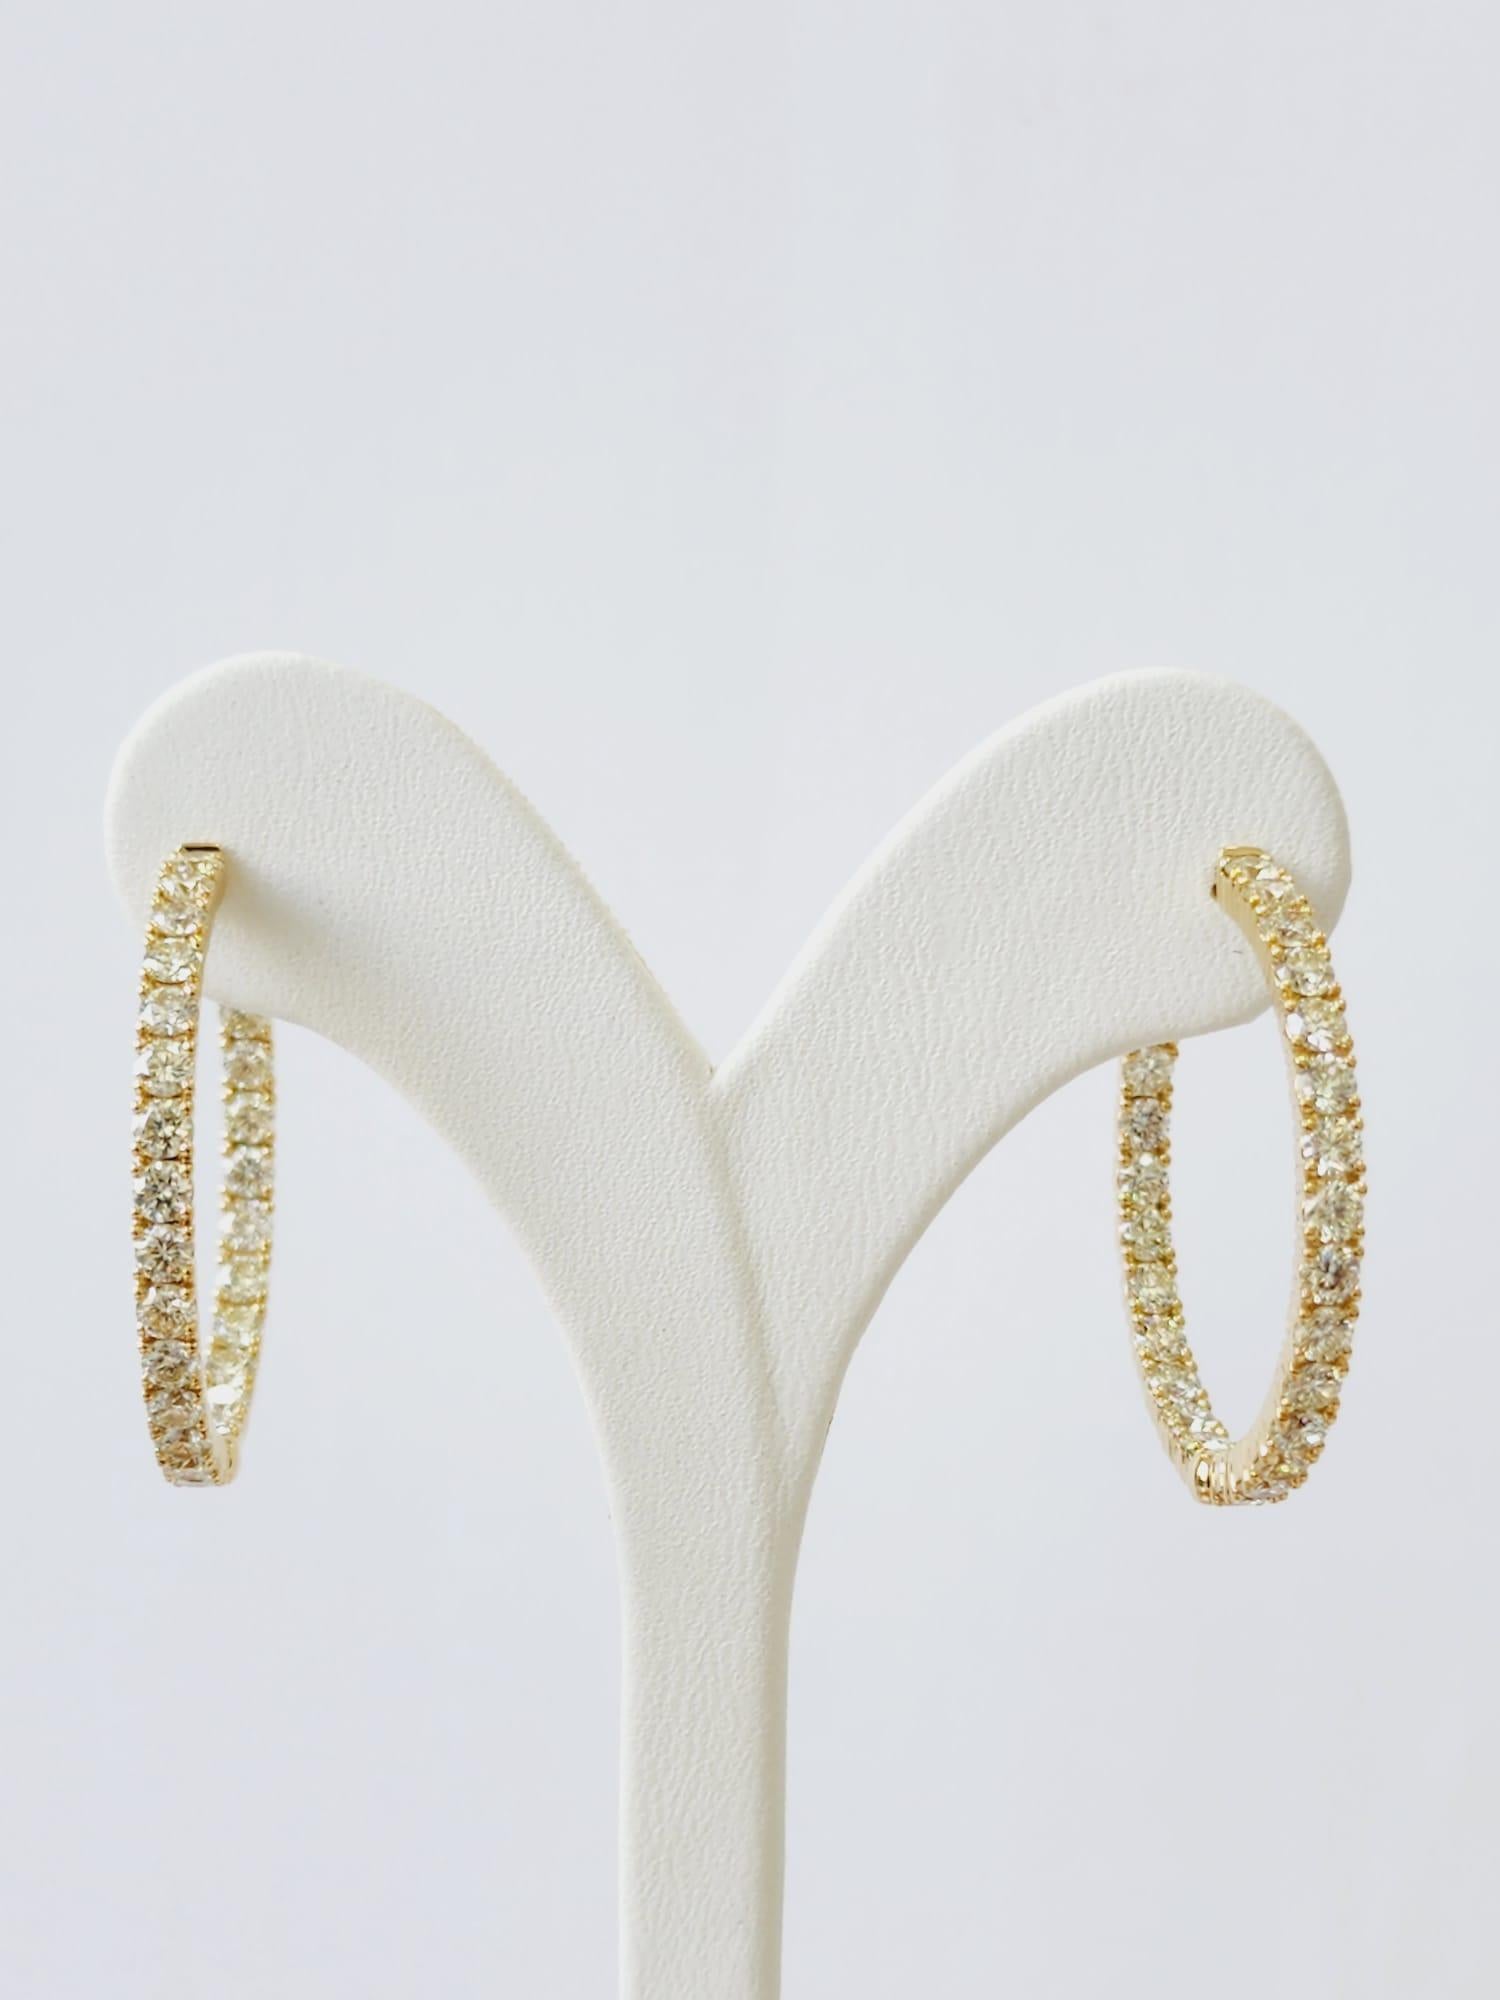 Diamond Hoop Earrings 4.25 Carat in 18 K Yellow Gold For Sale 1